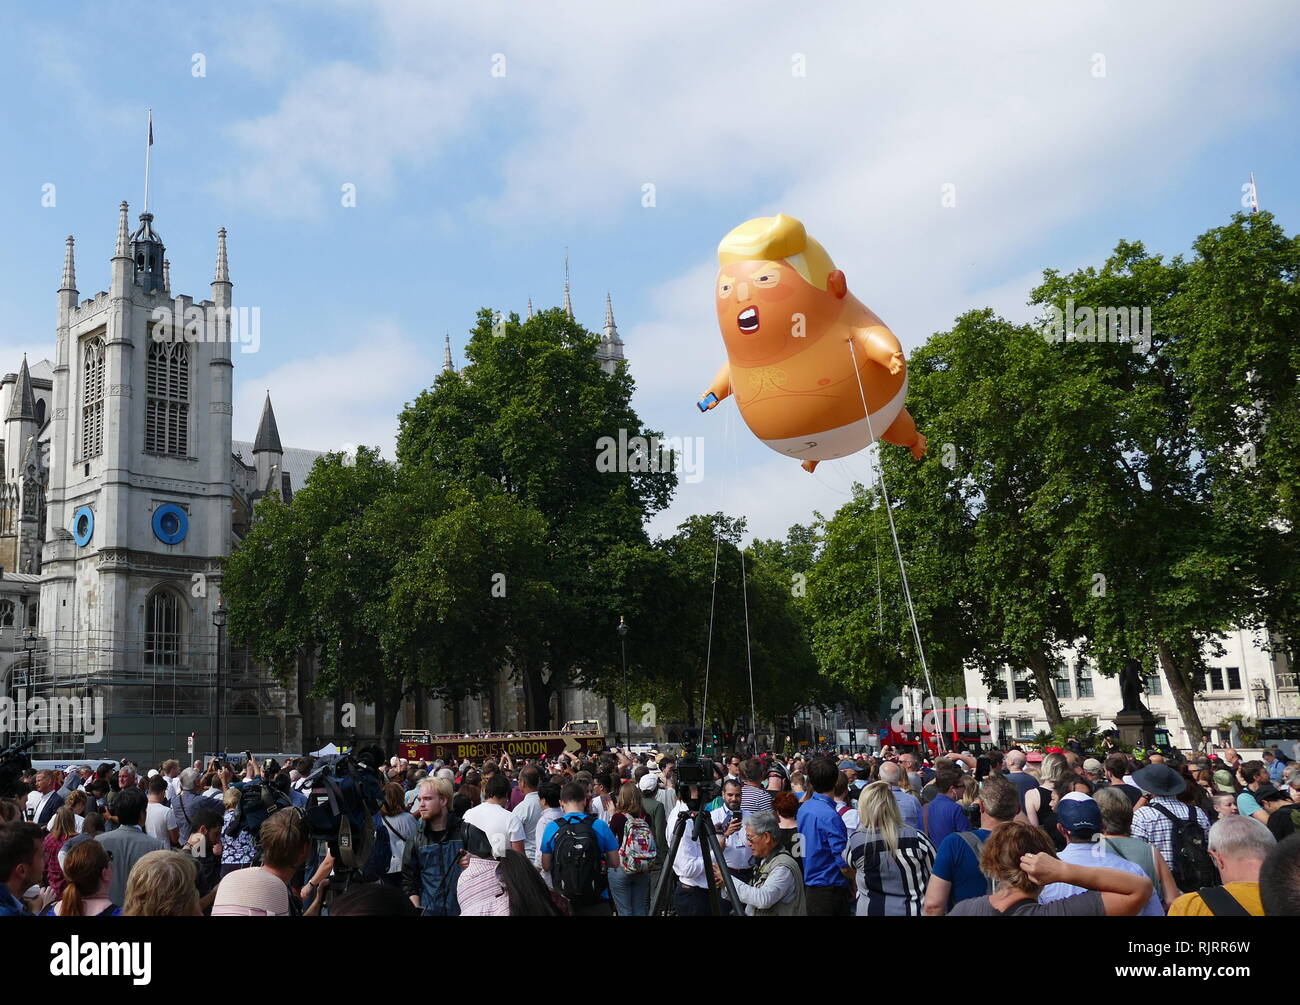 Durante una visita oficial al Reino Unido por el Presidente de los Estados Unidos, Donald Trump, una caricatura de inflables Trump fue volado en protesta contra él. El globo fue volado sobre Parliament Square, Londres, el 13 de julio de 2018. Los 6 metros (20 pies) de altura, lleno de helio inflables de plástico, también conocida como 'globo' o 'blimp', fue diseñado por Matt Bonner y construido por imaginar hinchables de Leicester. Foto de stock